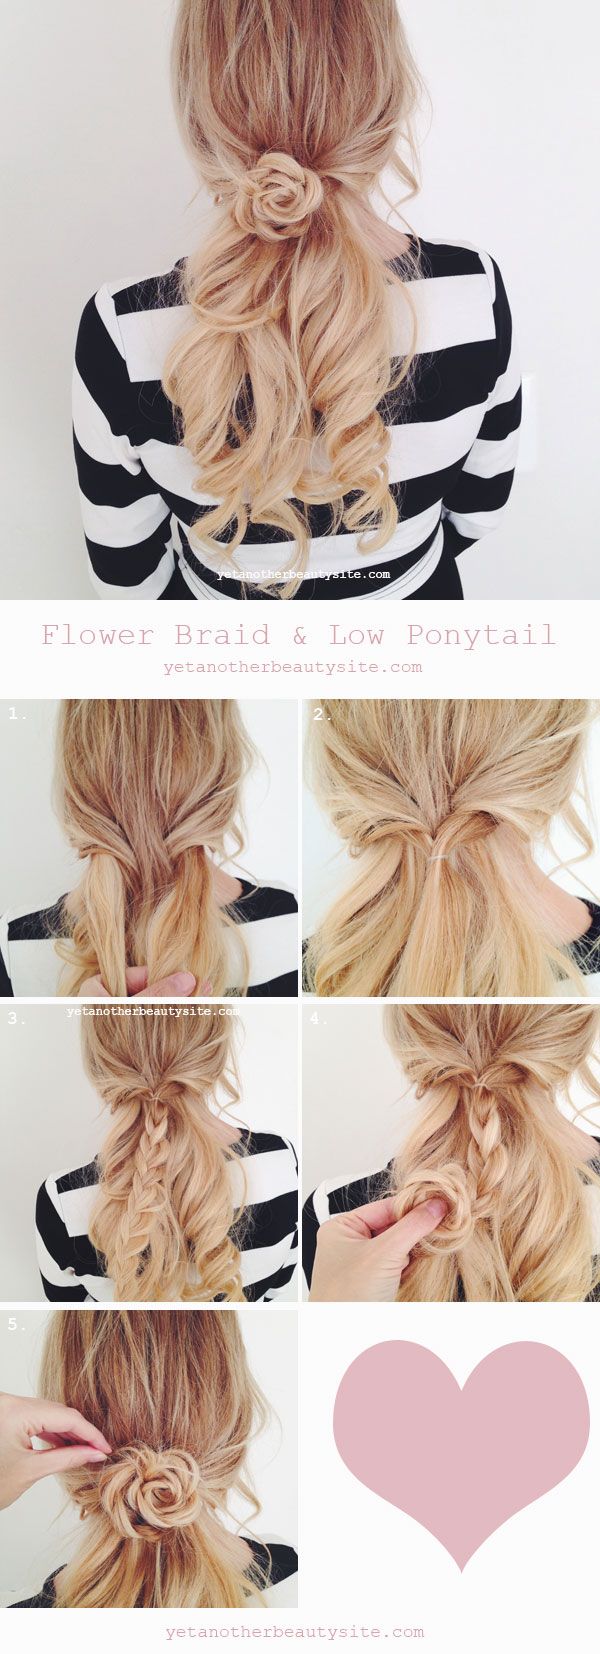 DIY Flower Braid Hairstyle Tutorial